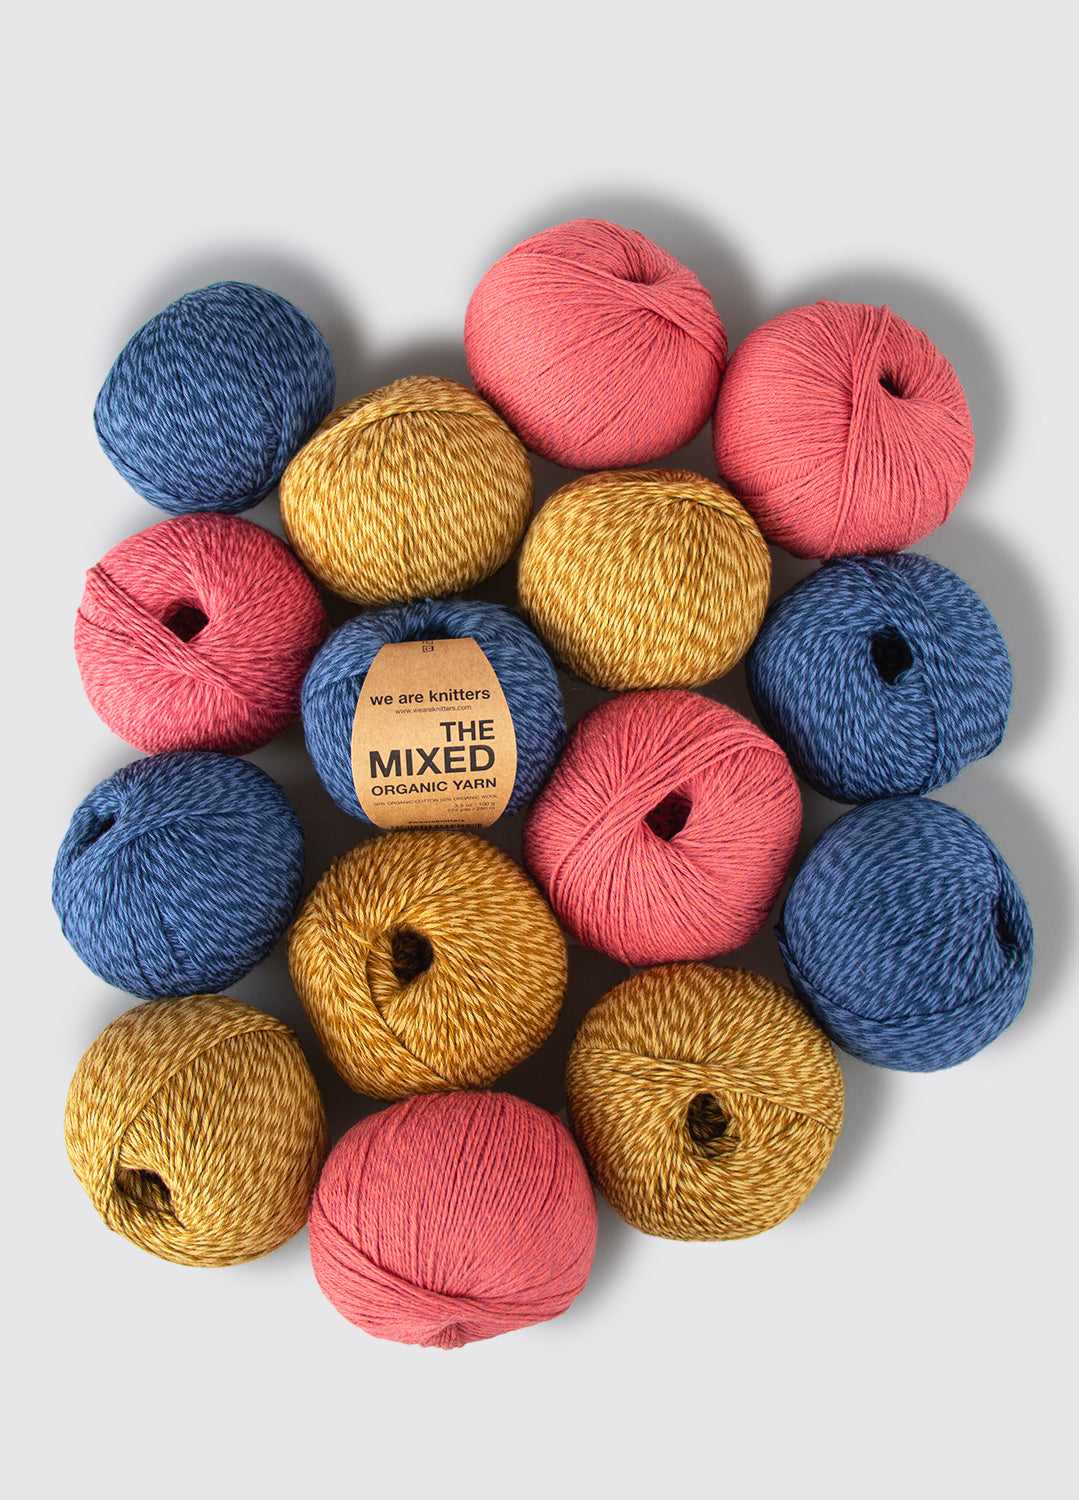 15 Pack of Mixed Yarn Balls